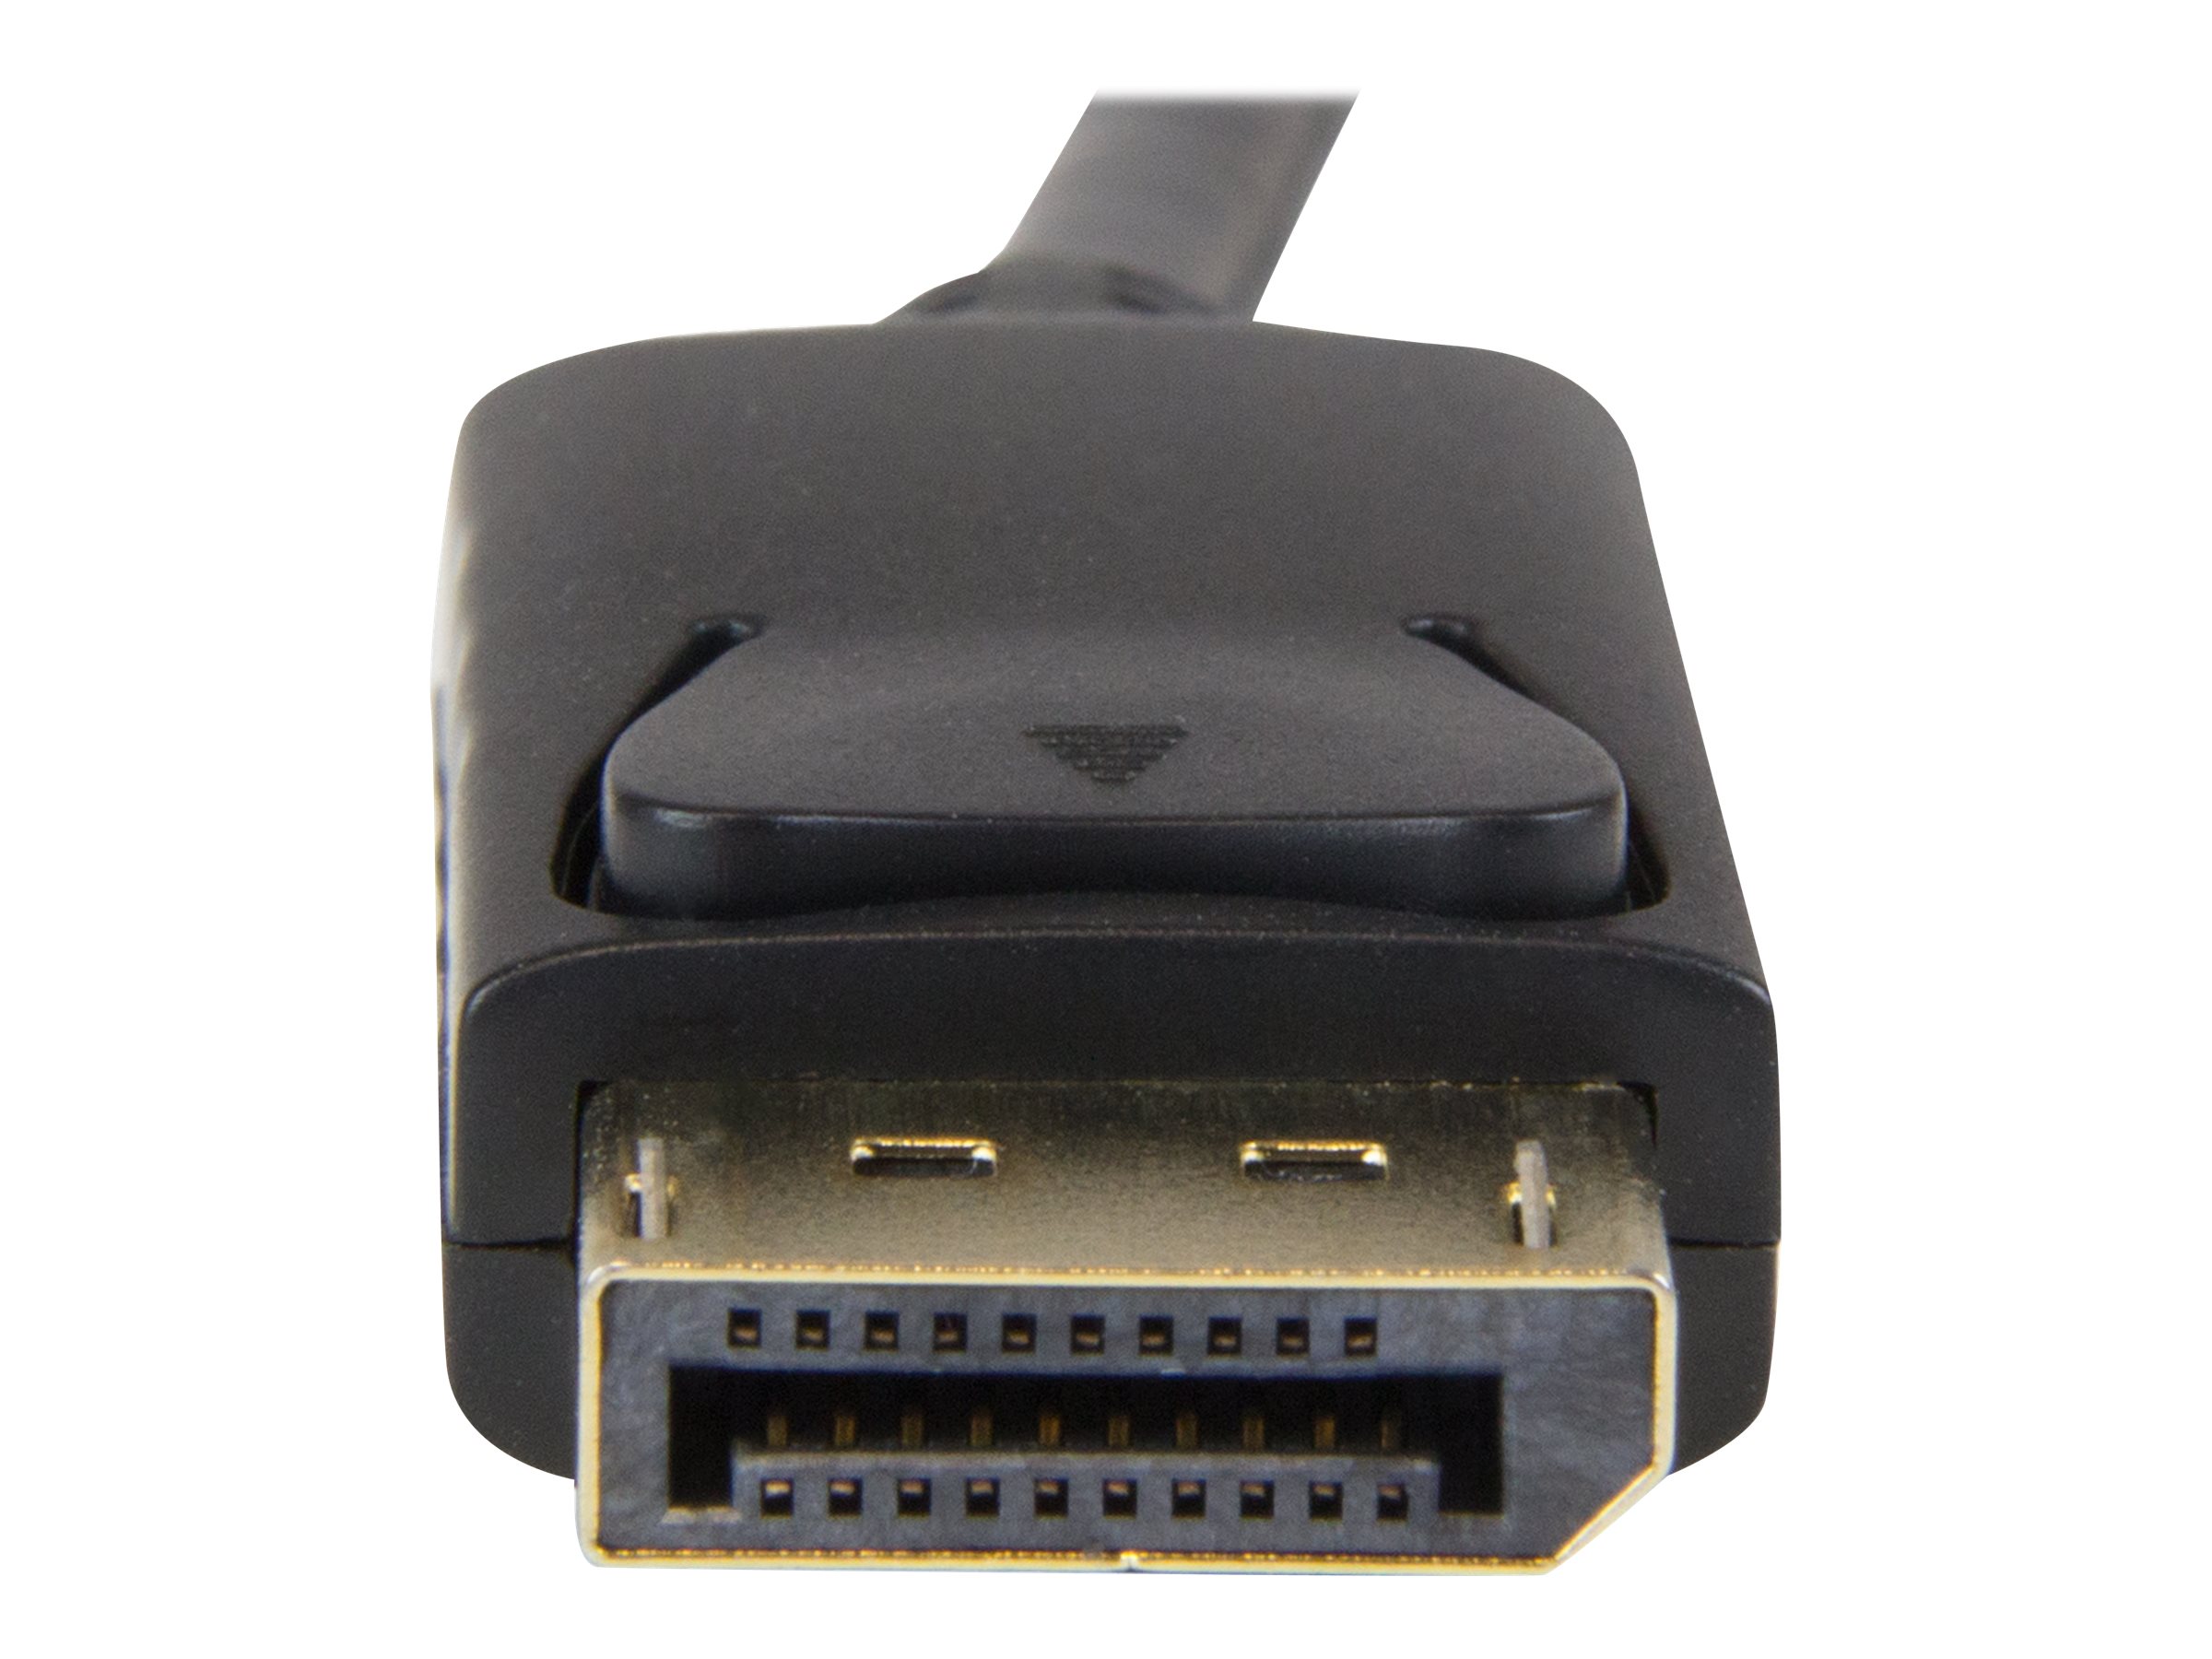 StarTech.com 2m DisplayPort auf HDMI Konverterkabel - 4K - DP auf HDMI Adapter mit Kabel - Ultra HD 4K - St/St - Videokabel - DisplayPort (M)